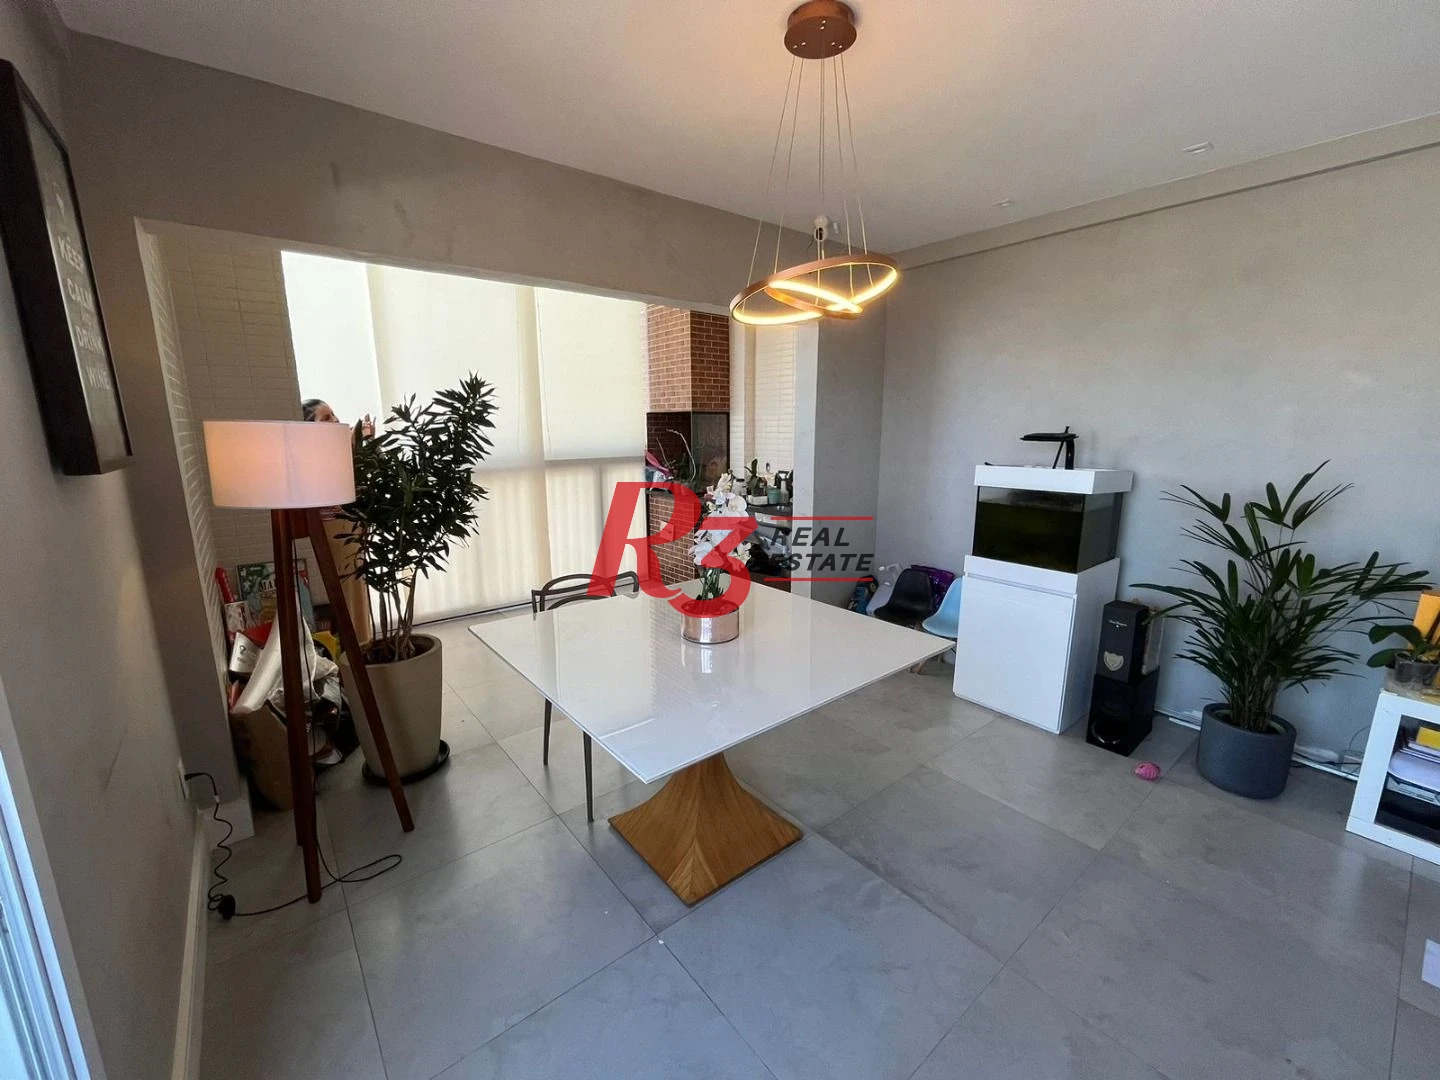 Apartamento Duplex com 3 dormitórios à venda, 131 m² por R$ 940.000,00 - Encruzilhada - Santos/SP